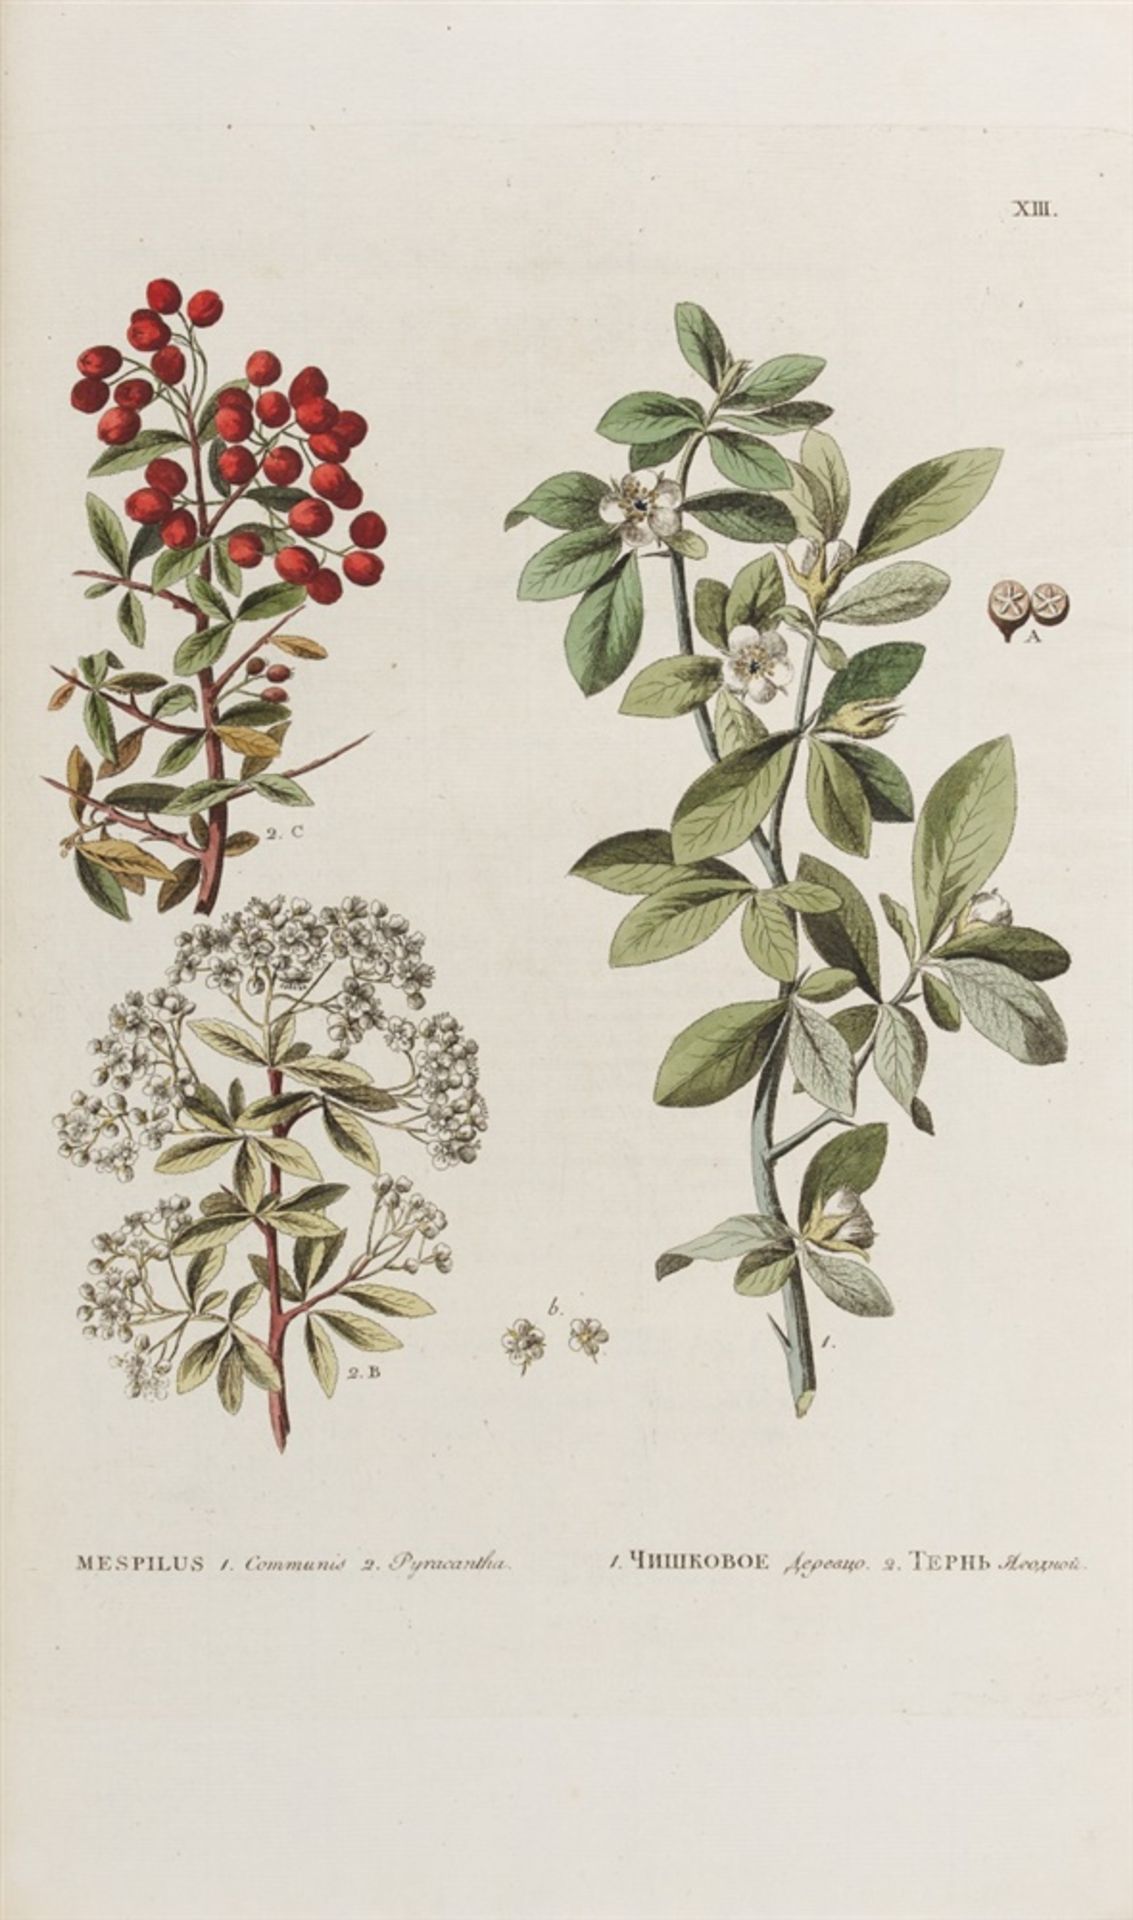 Pallas, Peter Simon: Flora Rossica, seu stirpium Imperii Rossici per Europam et Asiam indigenarum